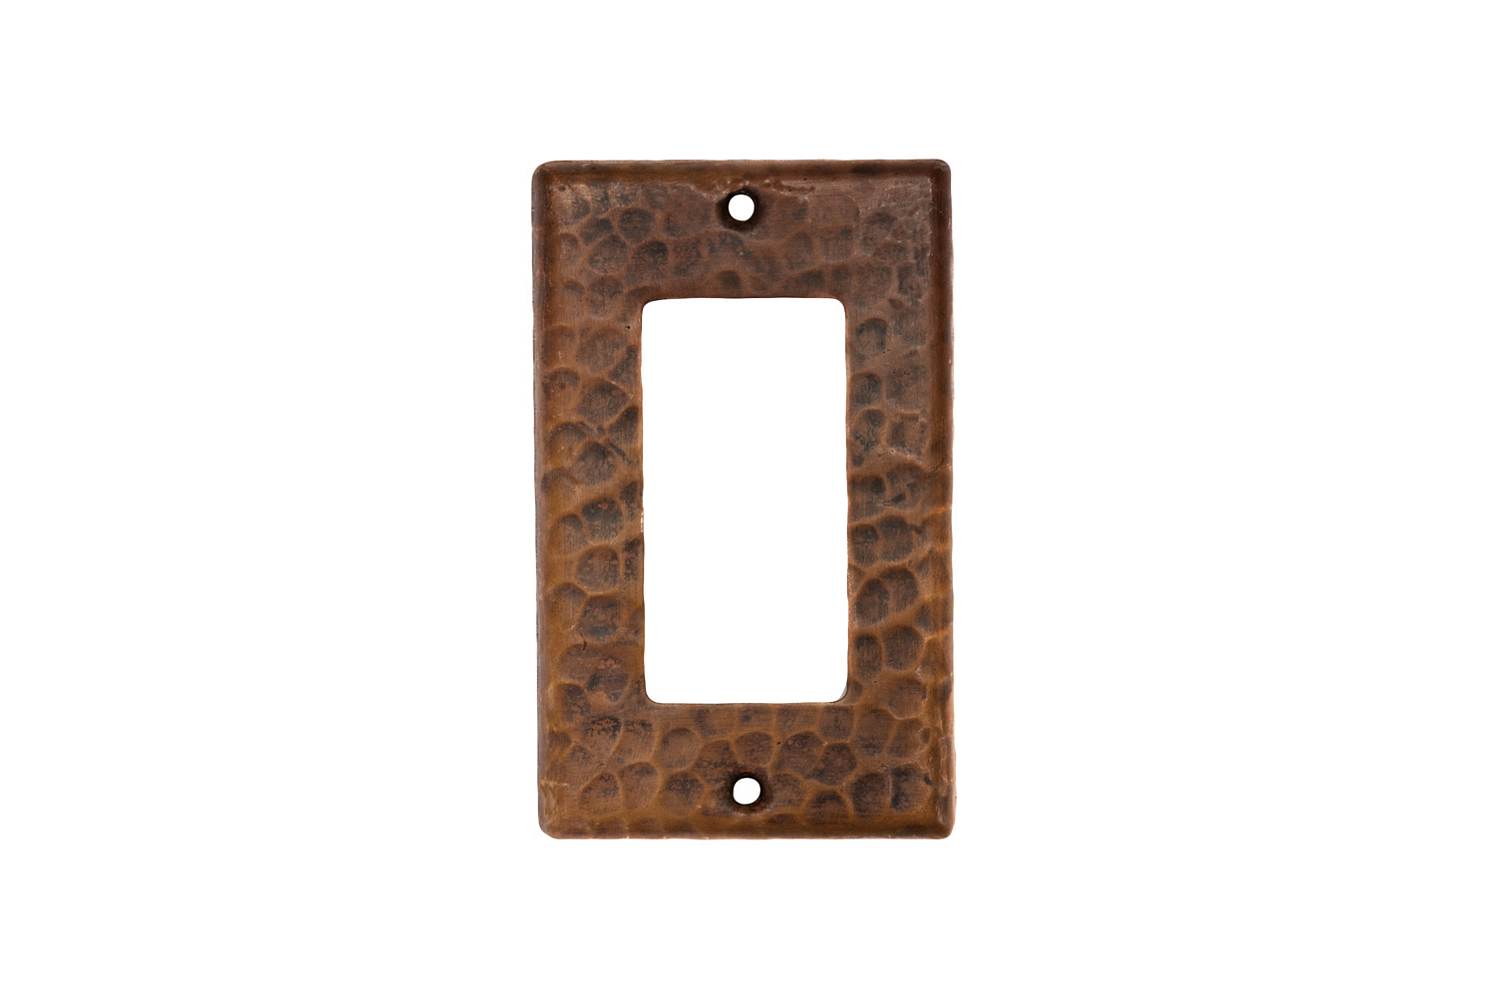 SR1_PKG2 2.75 Inch Premier Copper Single Ground Fault/Rocker GFI Switchplate Cover - Quantity 2